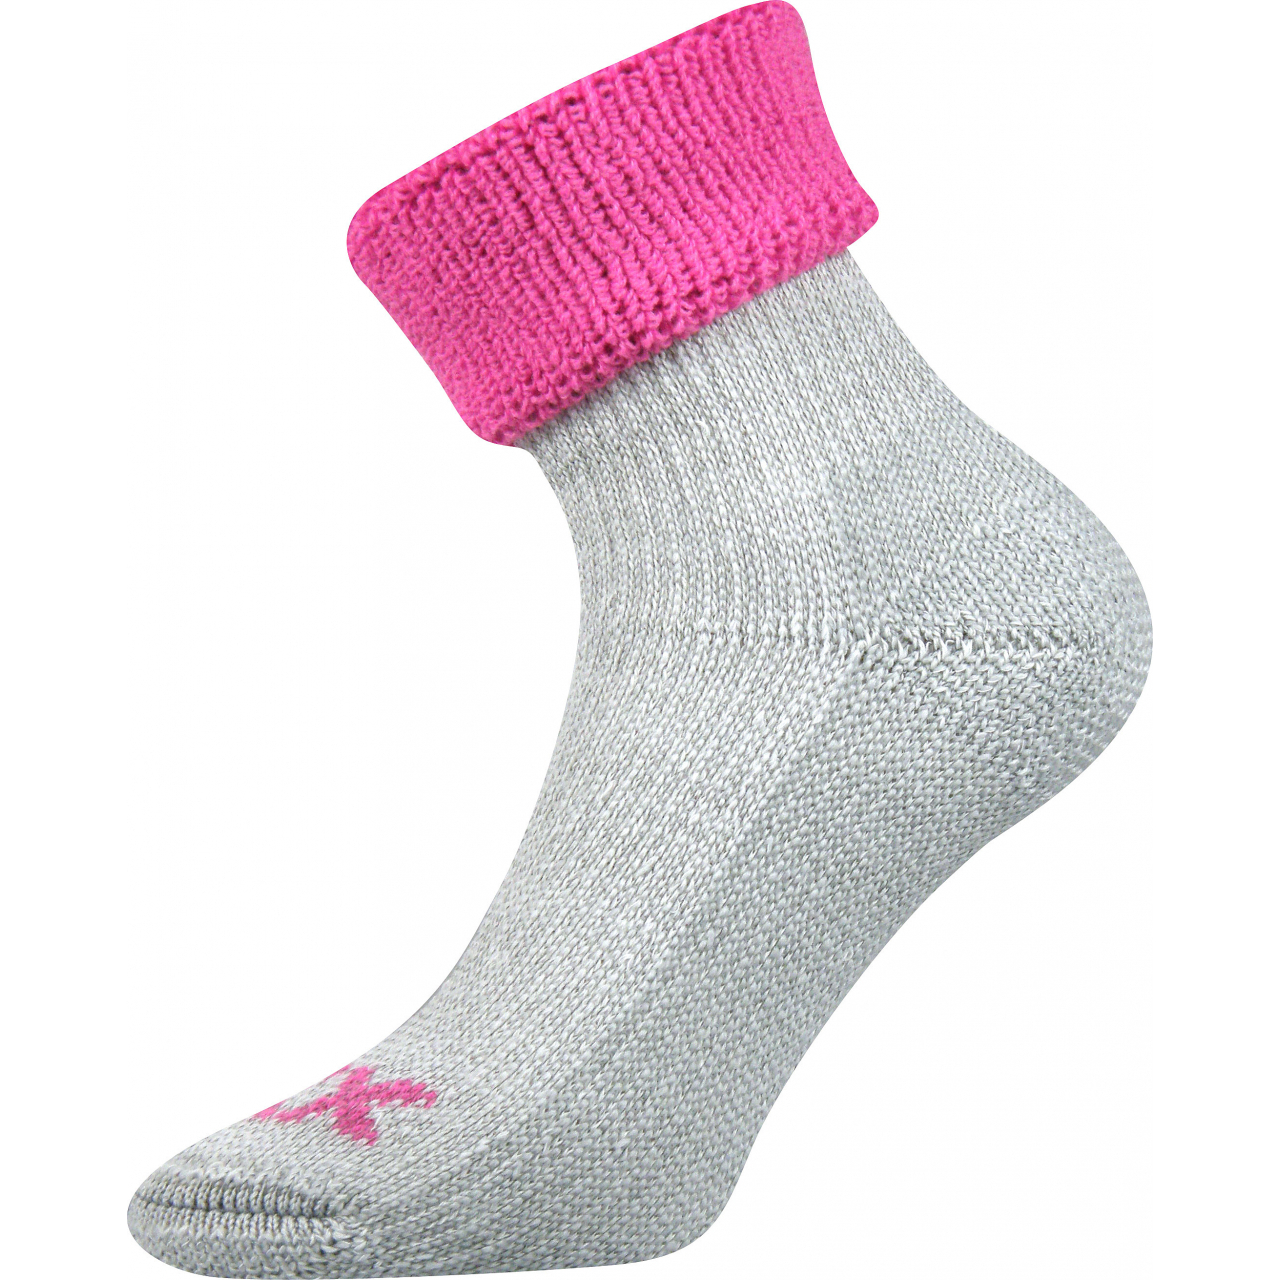 Ponožky dámské termo Voxx Quanta - šedé-růžové, 39-42